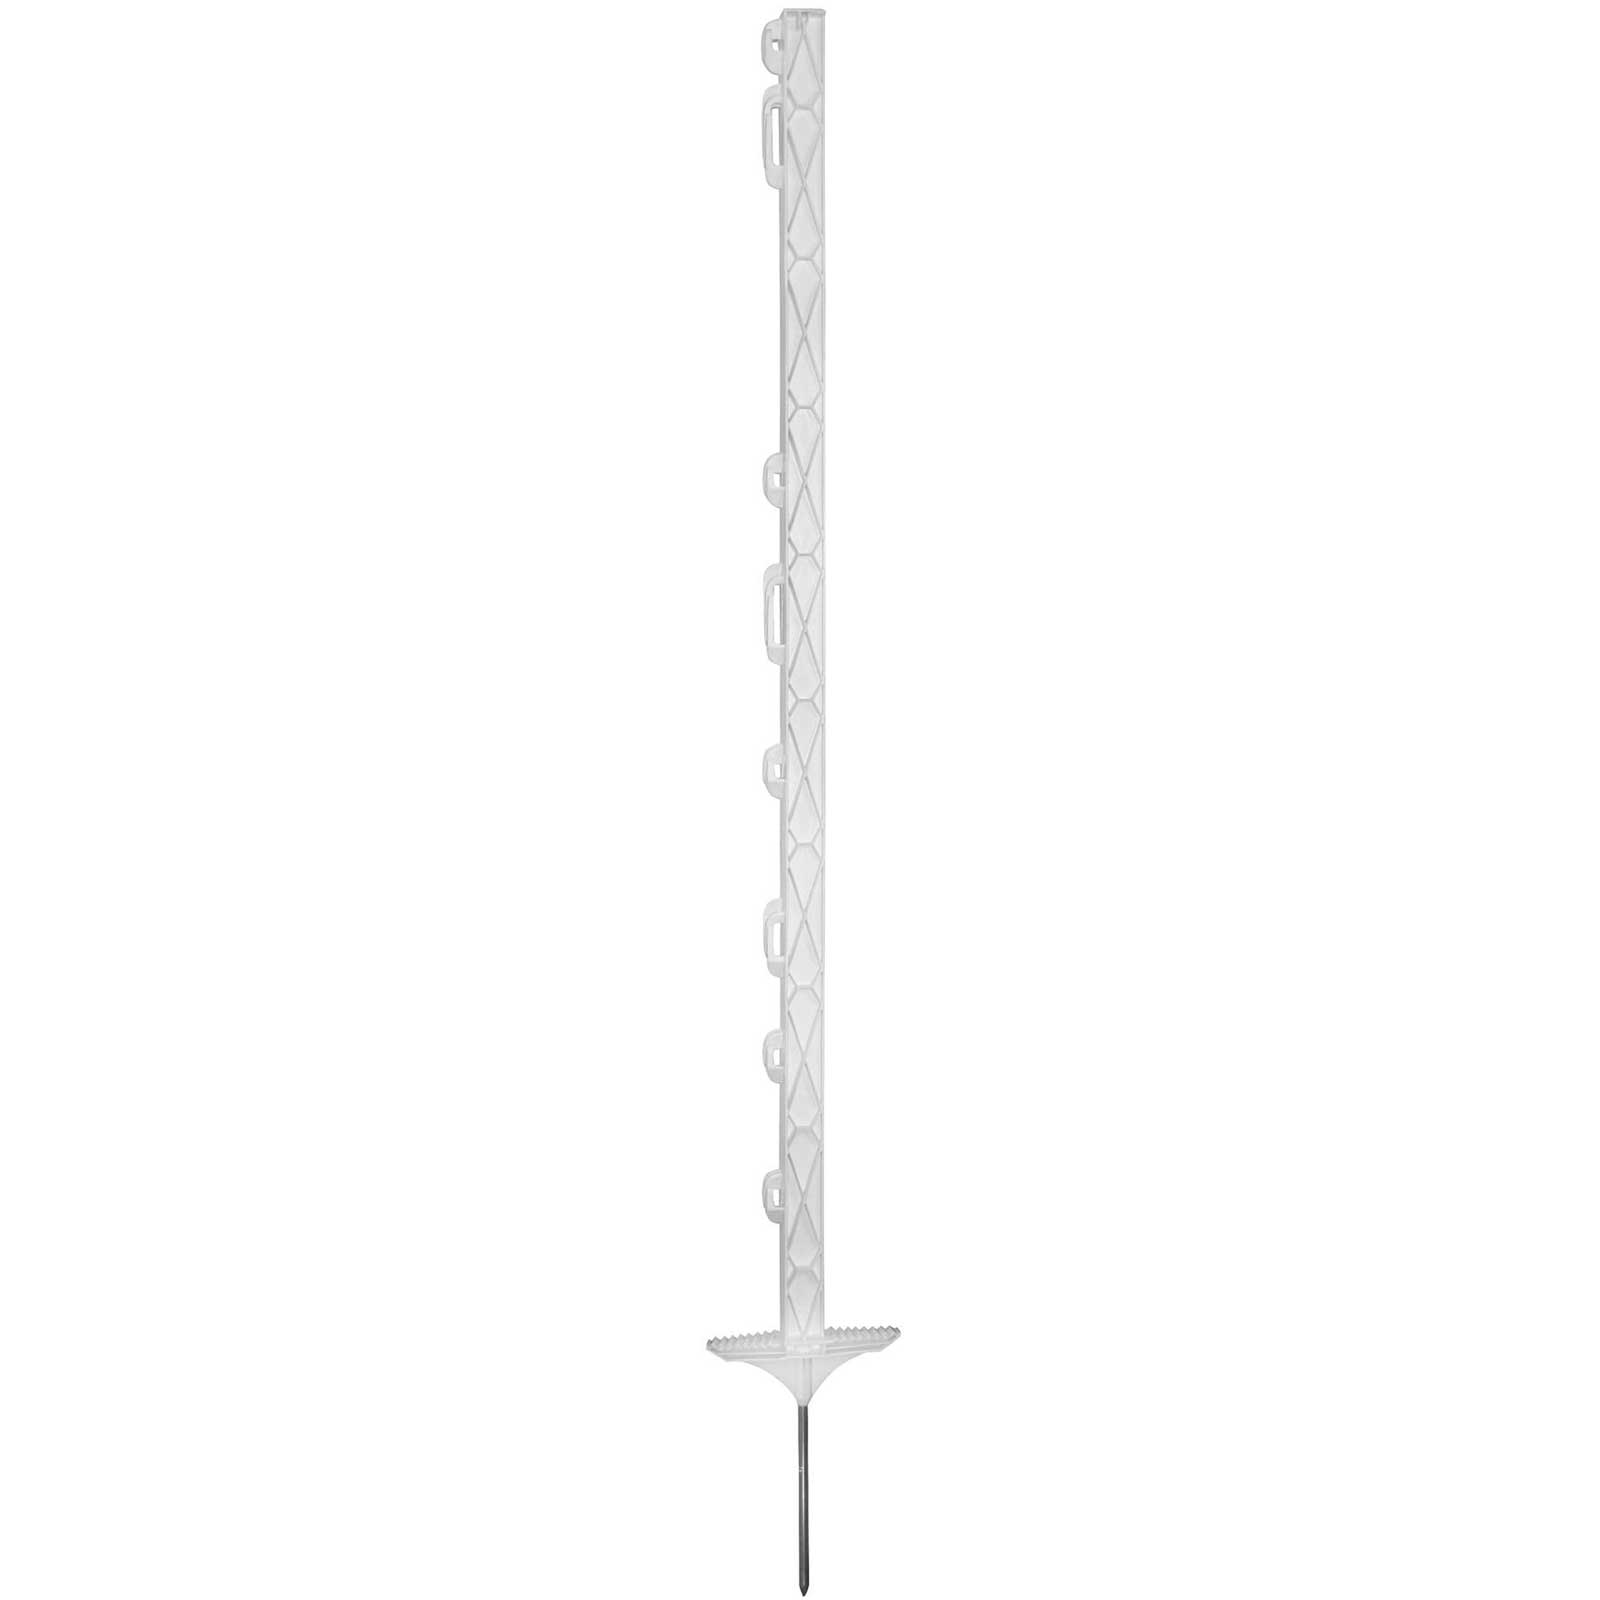 Piquet plastique Agrarzone 110 cm, double marche, blanc (pack de 20)